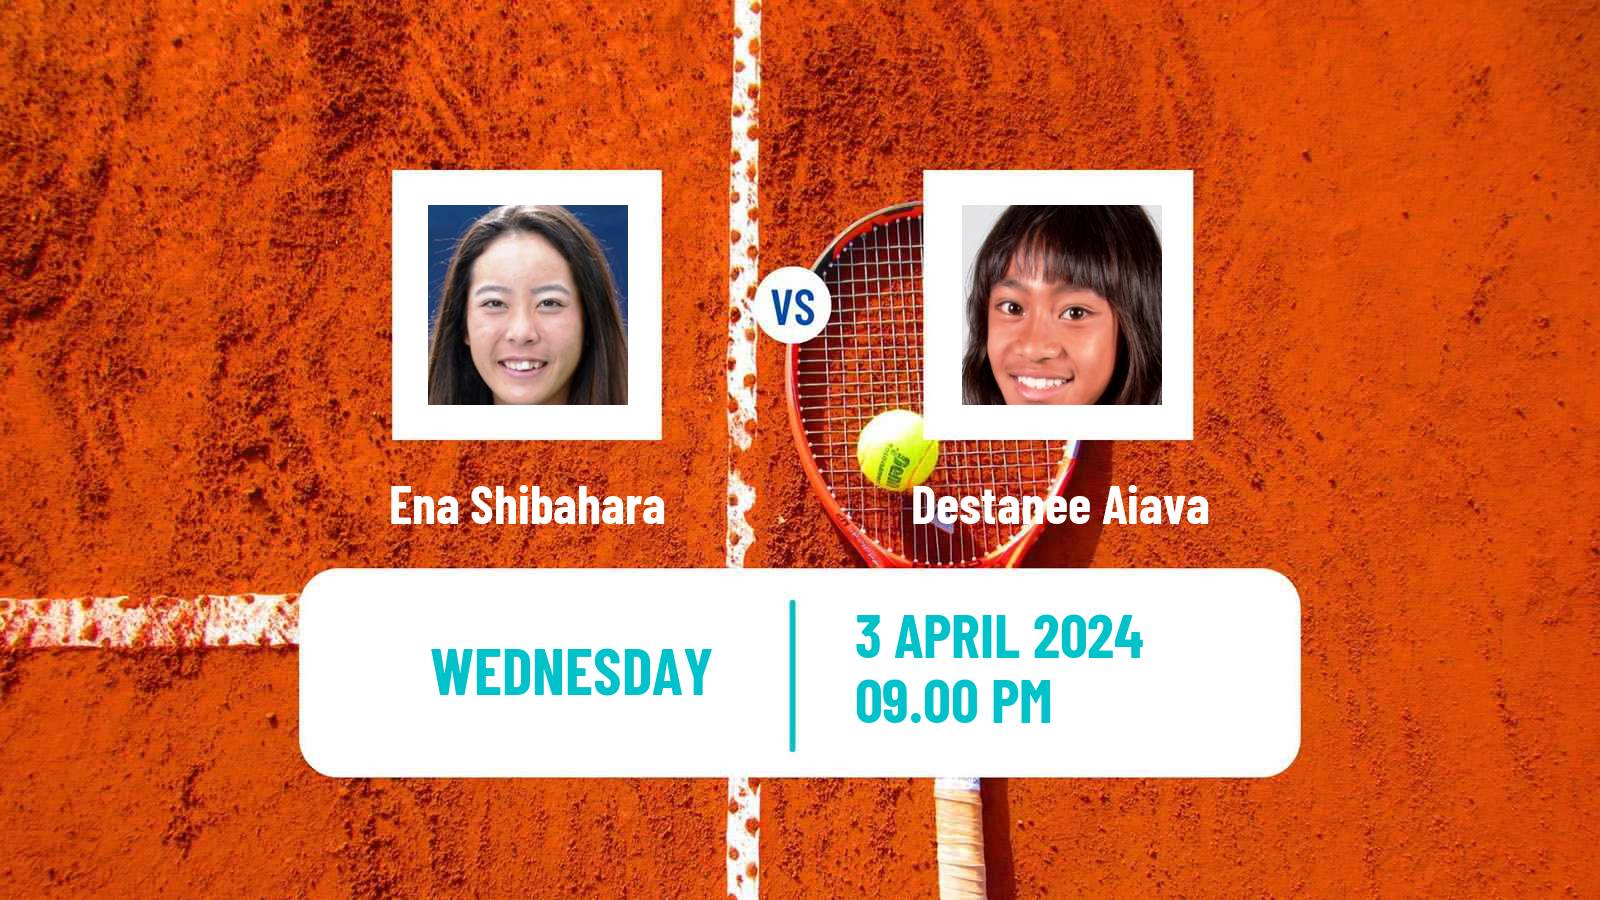 Tennis ITF W50 Kashiwa Women Ena Shibahara - Destanee Aiava